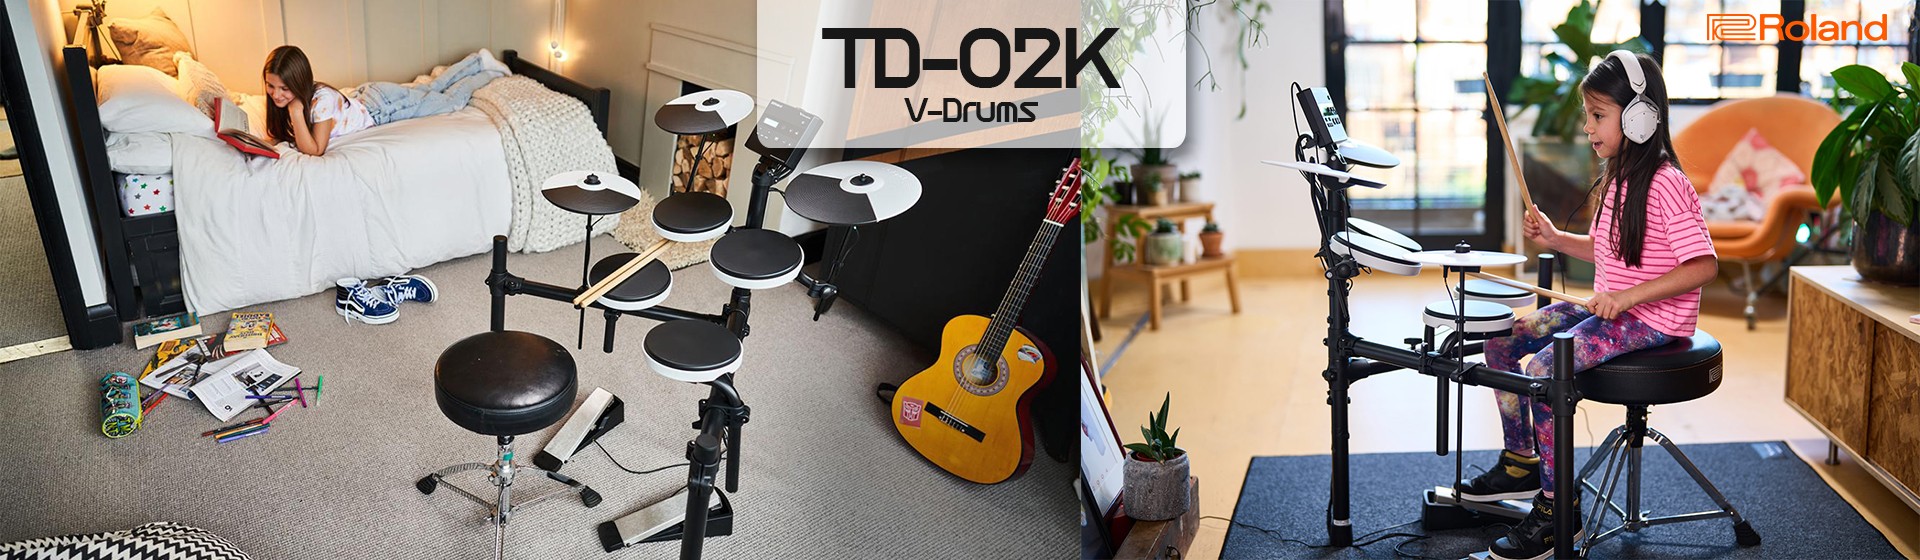 TD-02K V-Drums